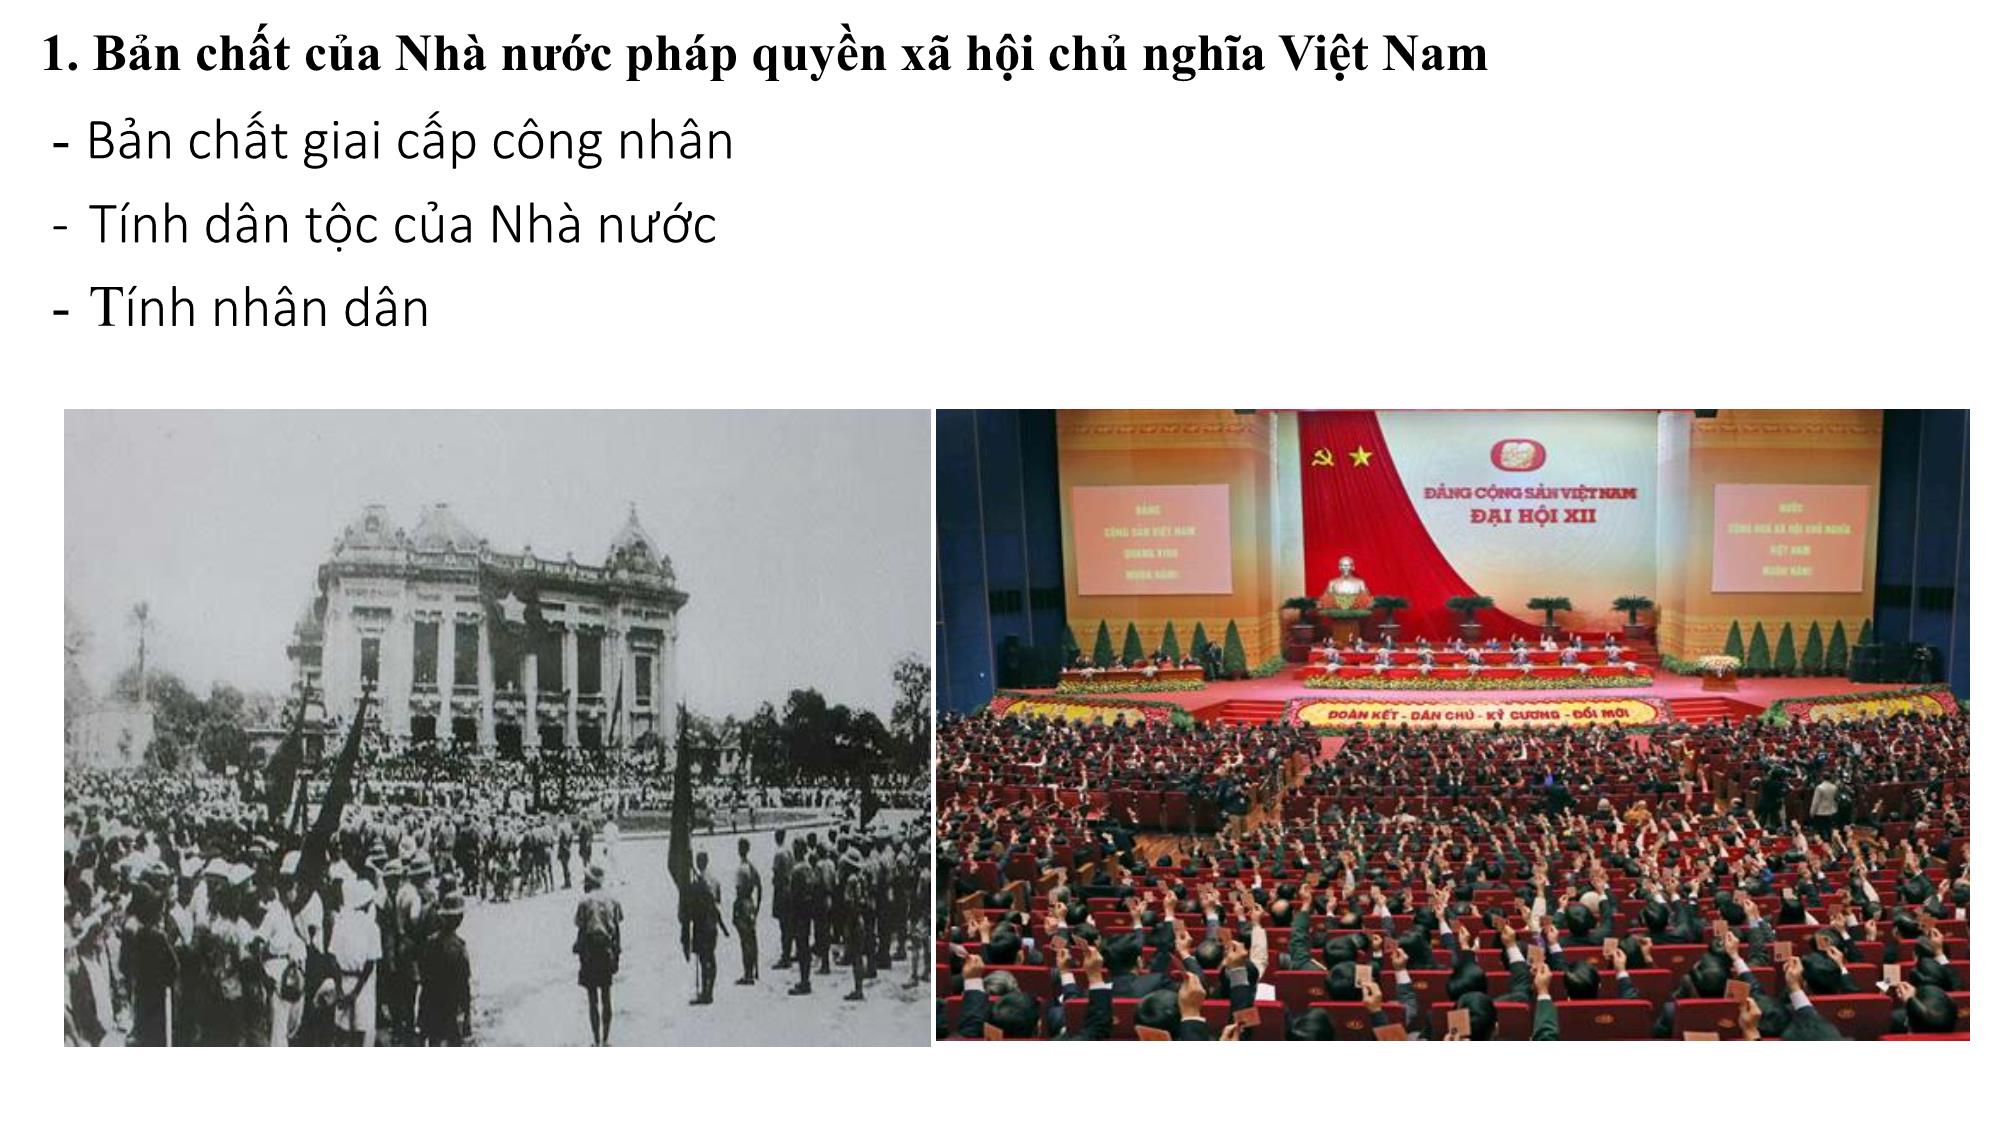 Bài giảng Chính trị - Bài 7: Xây dựng và hoàn thiện nhà nước pháp quyền xã hội chủ nghĩa Việt Nam trang 4